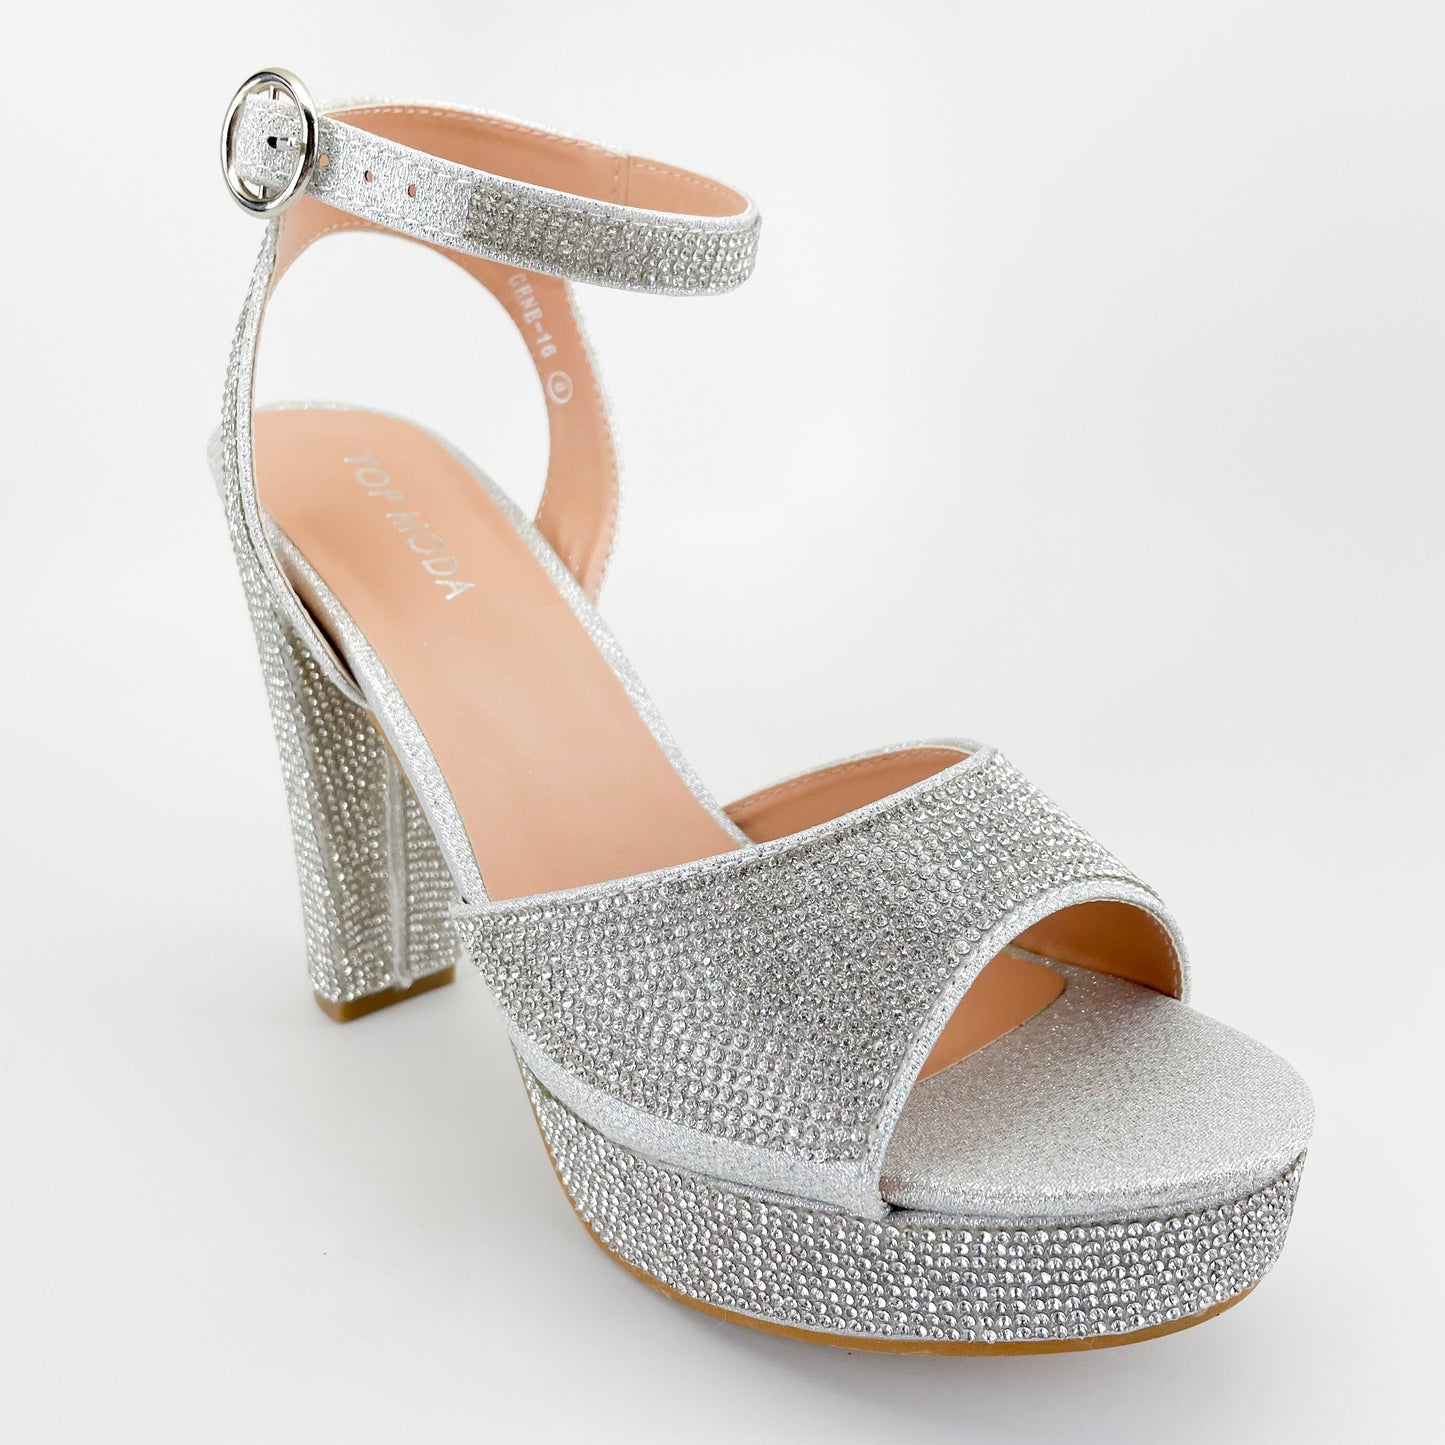 top moda gene-16 silver platform heels with rhinestones shoedazzle wedding party